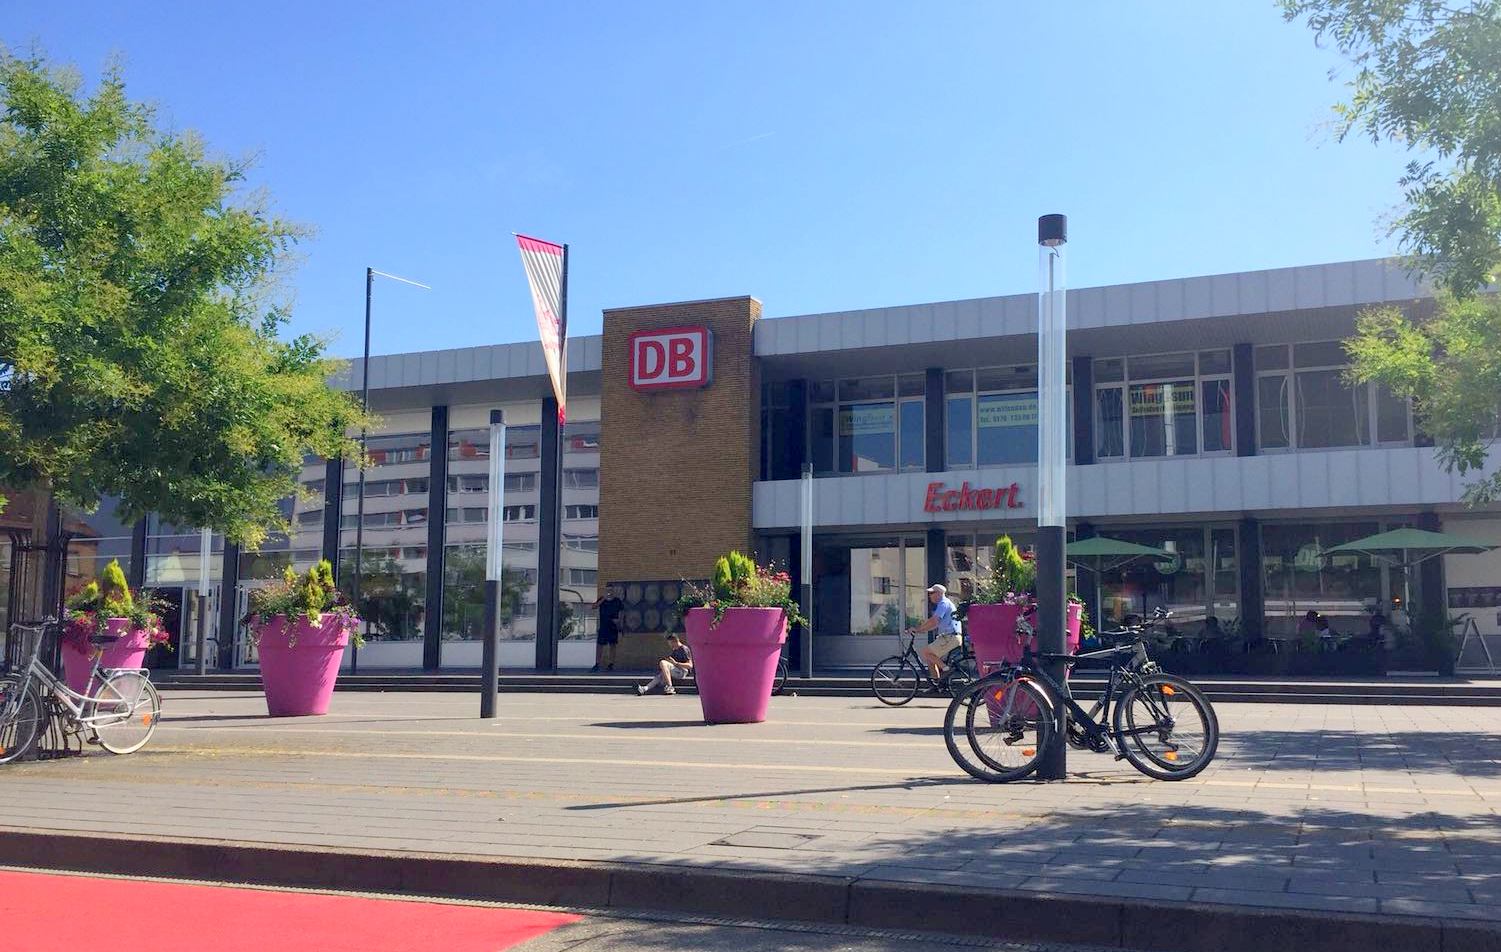 Bahnhof Landau mit Blumenkübeln und Fahrrädern